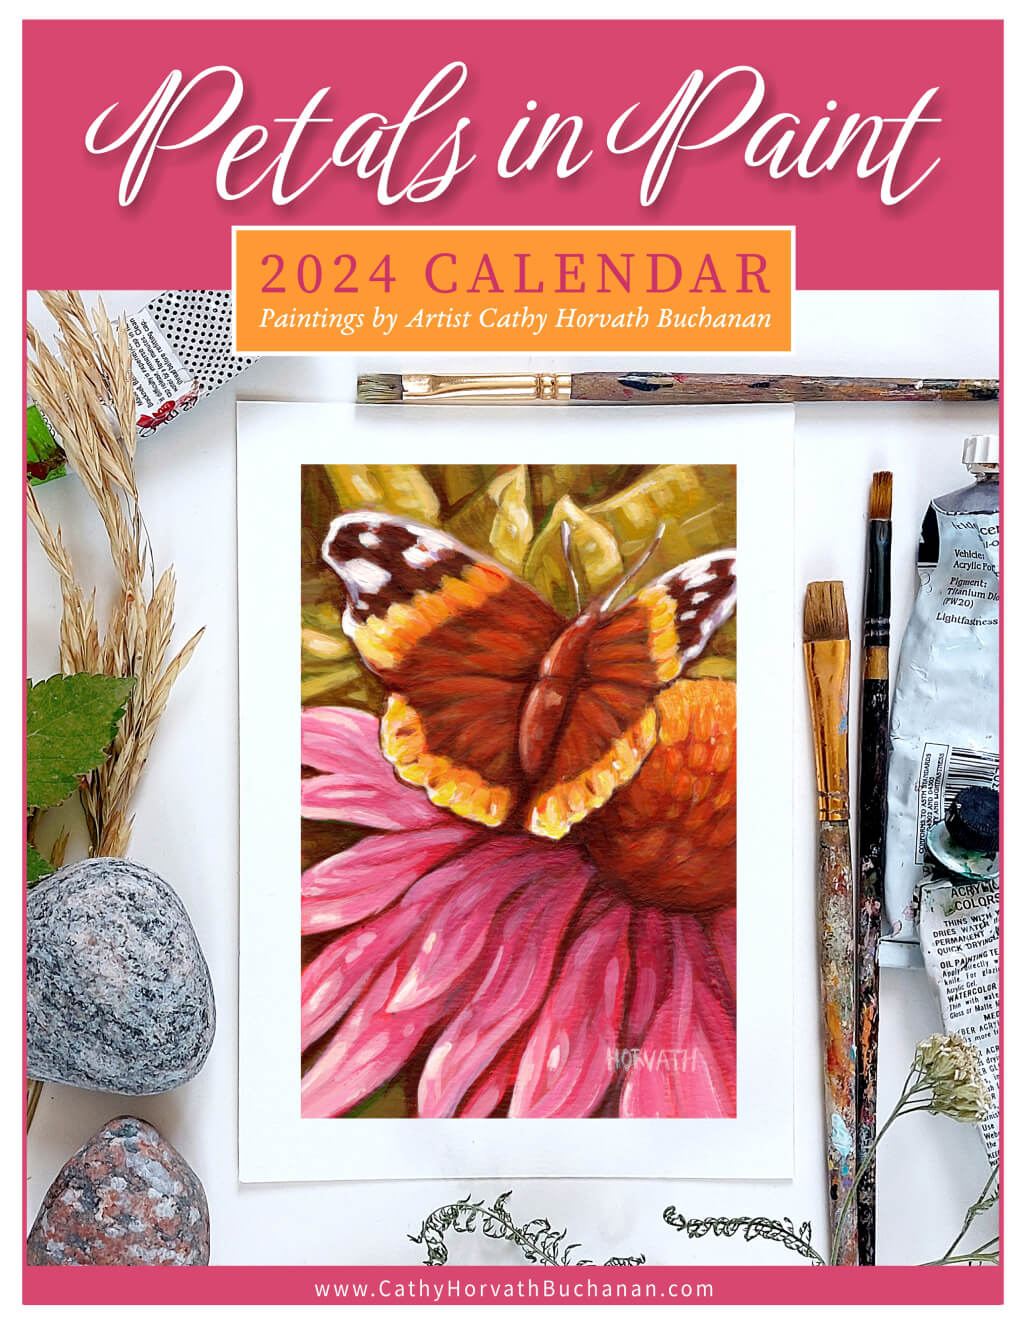 2024 Petals in Paint Calendar - Flower Wall Art by cover artist Cathy Horvath Buchanan